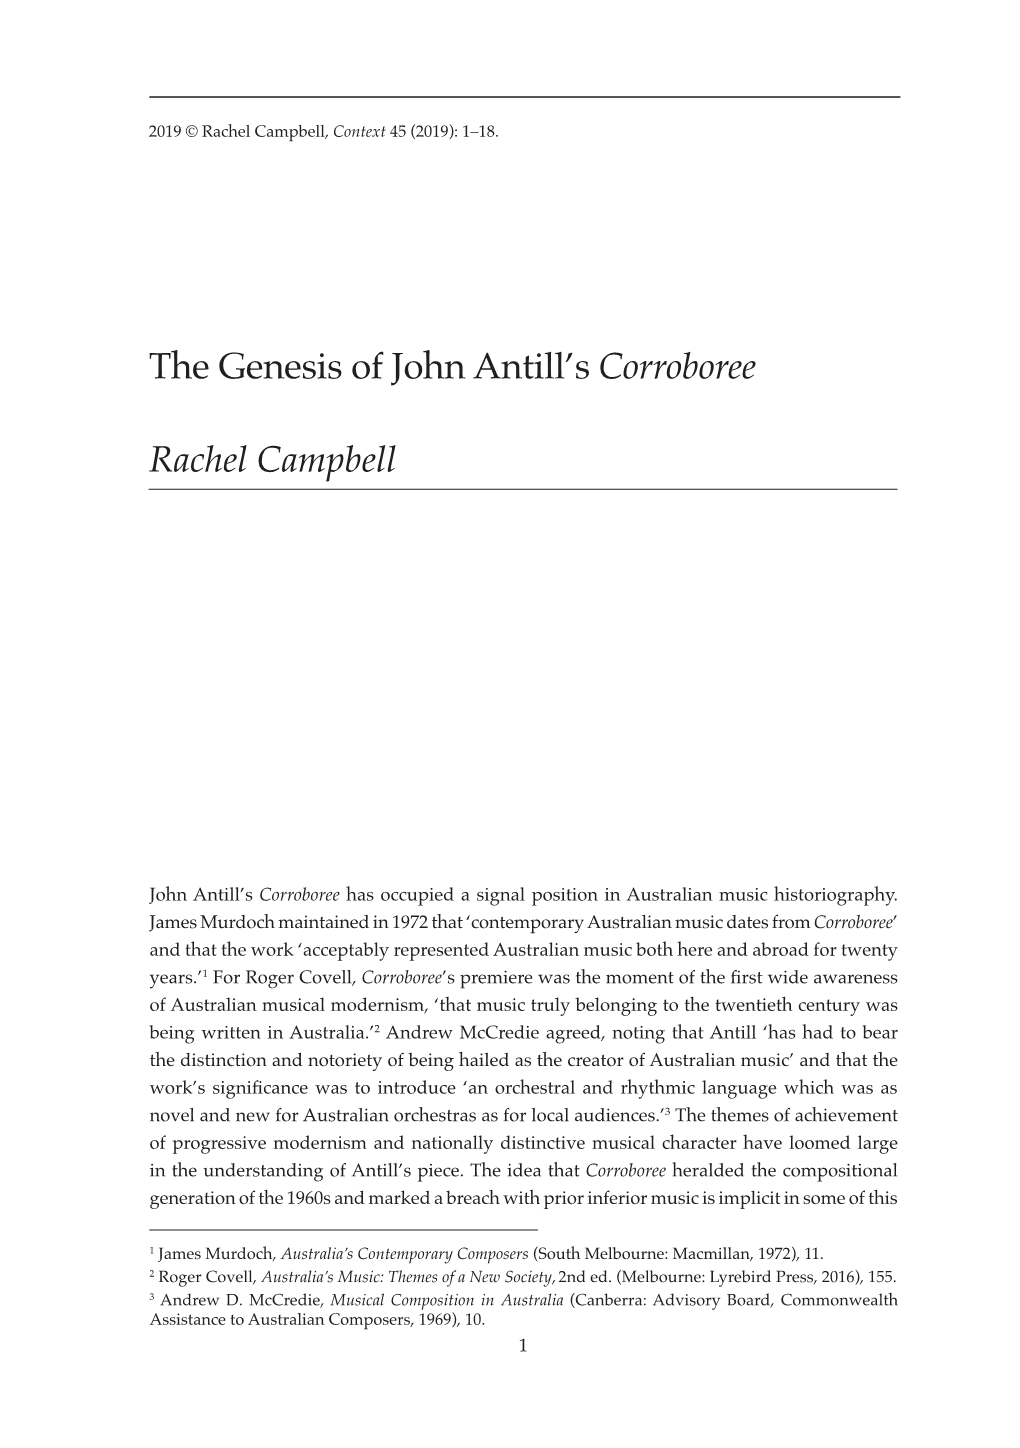 The Genesis of John Antill's Corroboree Rachel Campbell